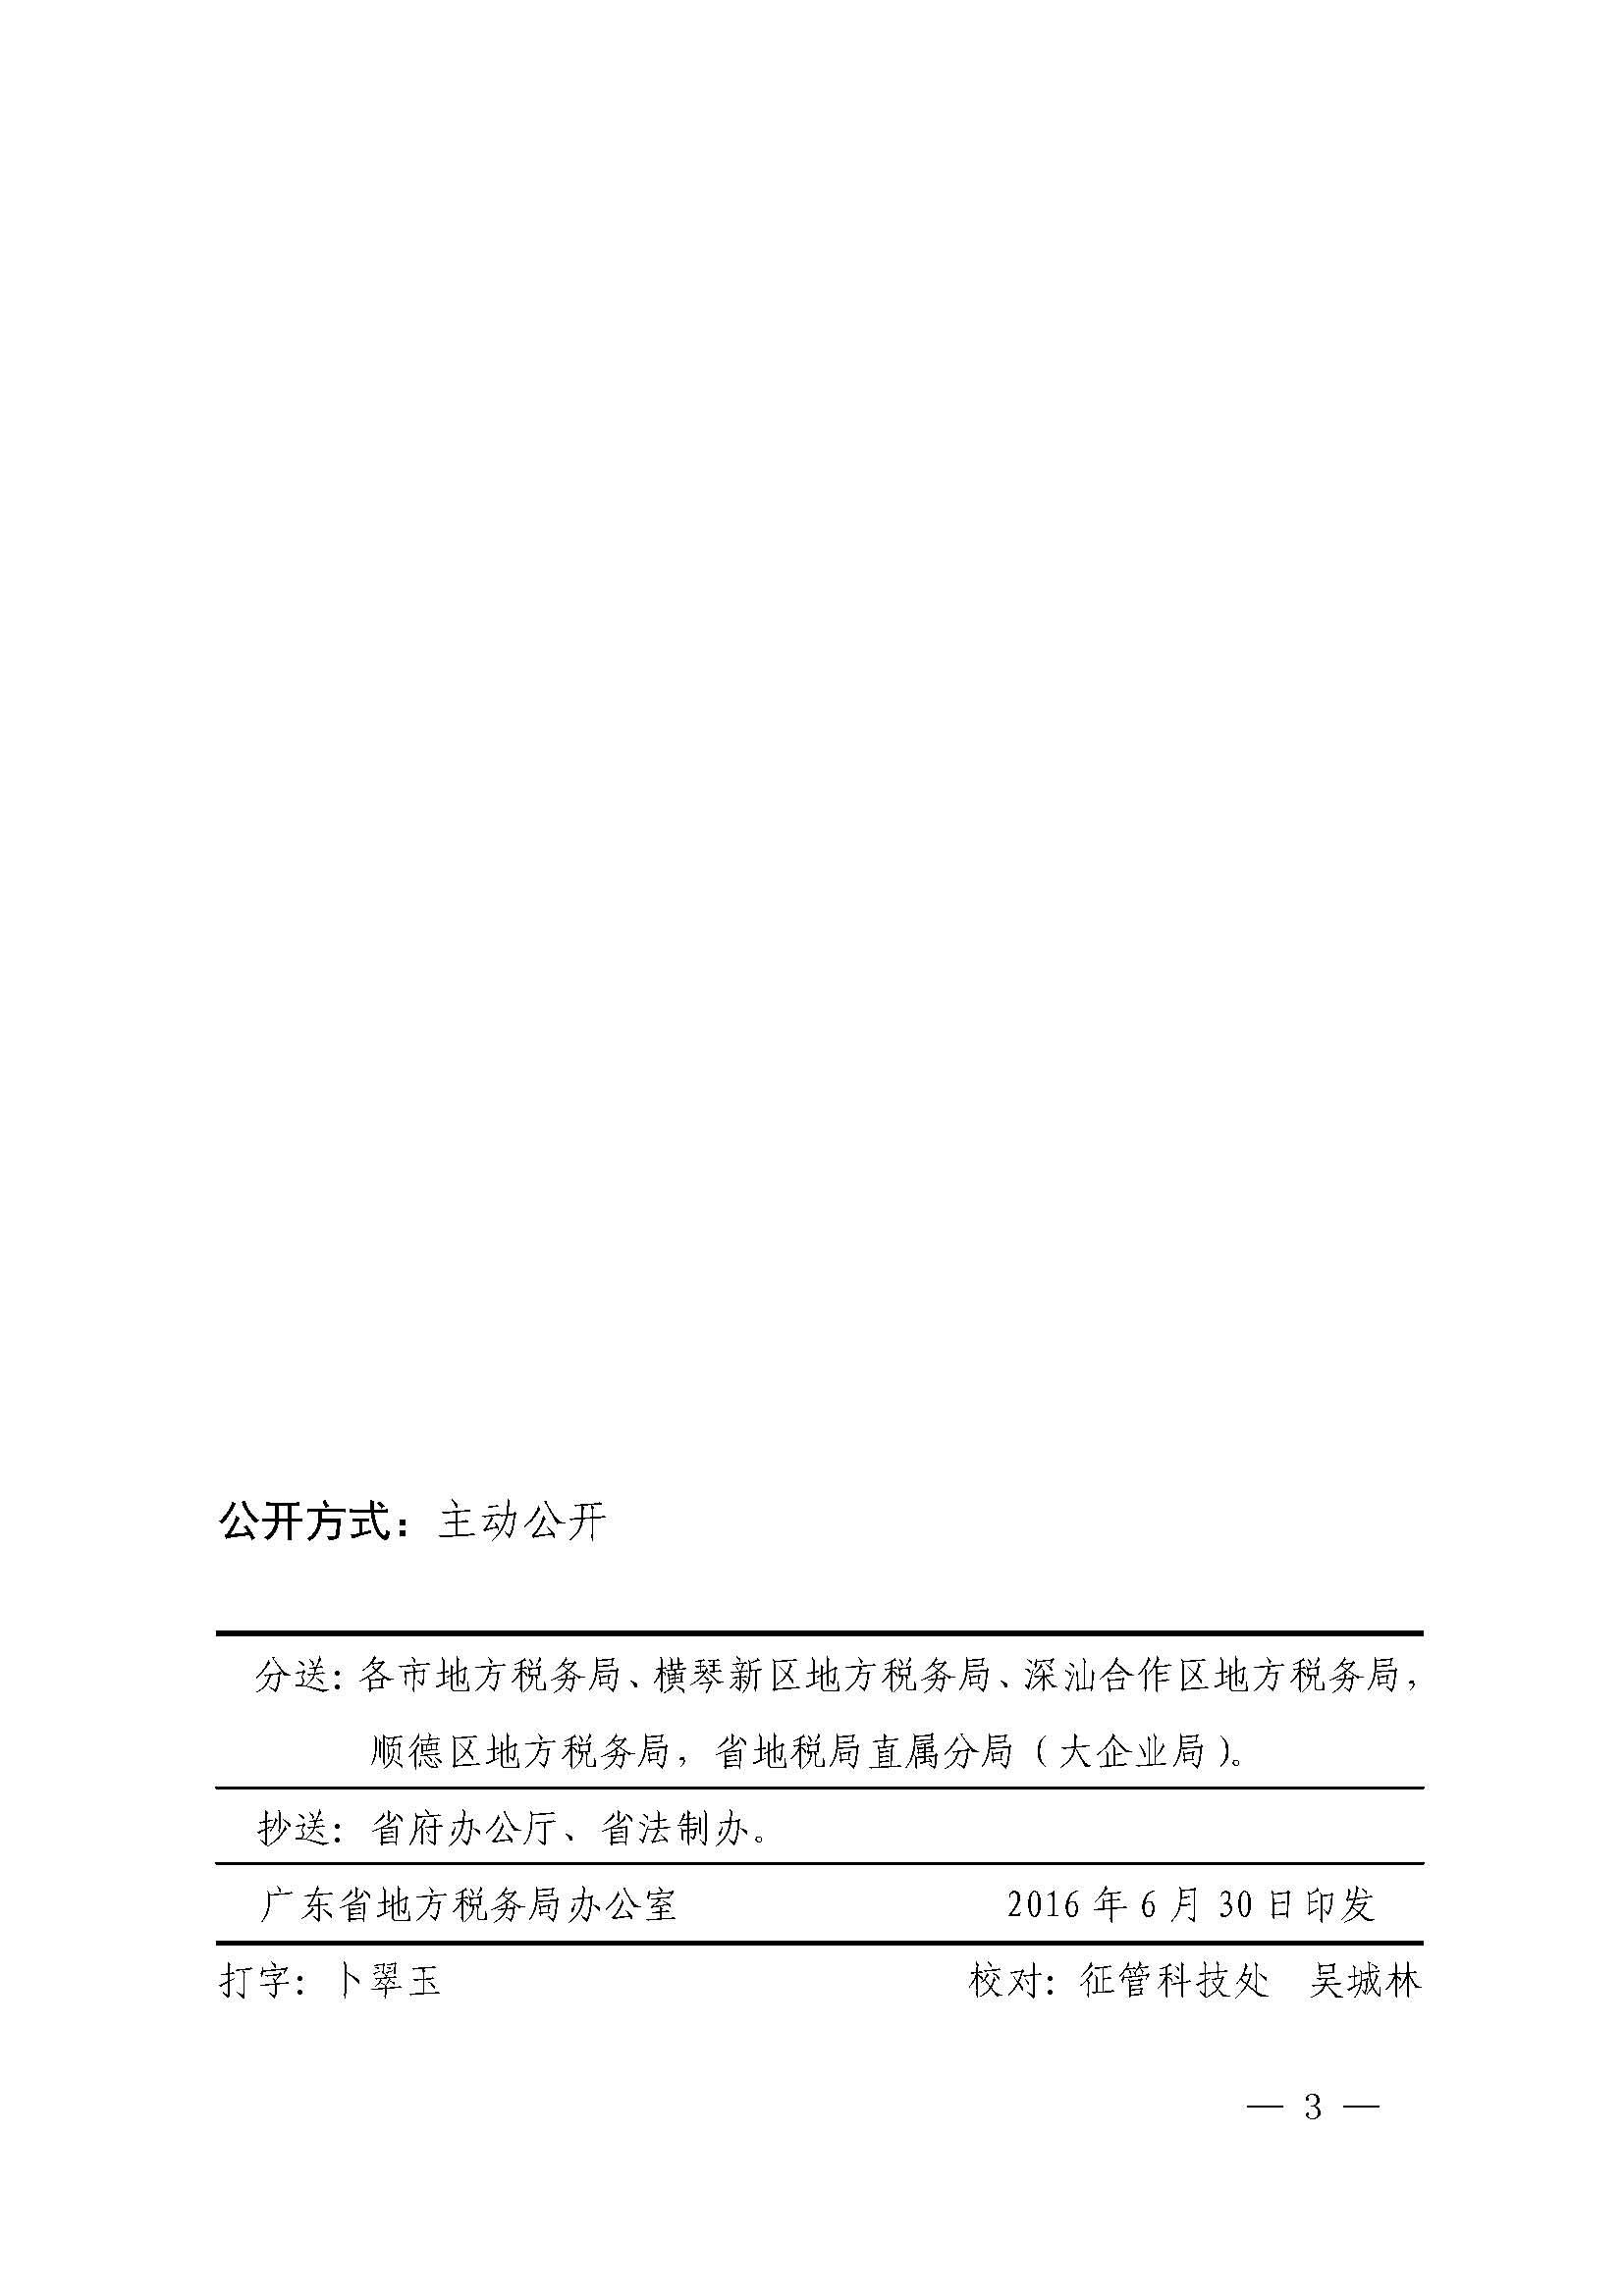 广东省地方税务局关于合理简并纳税人申报次数的公告_页面_3